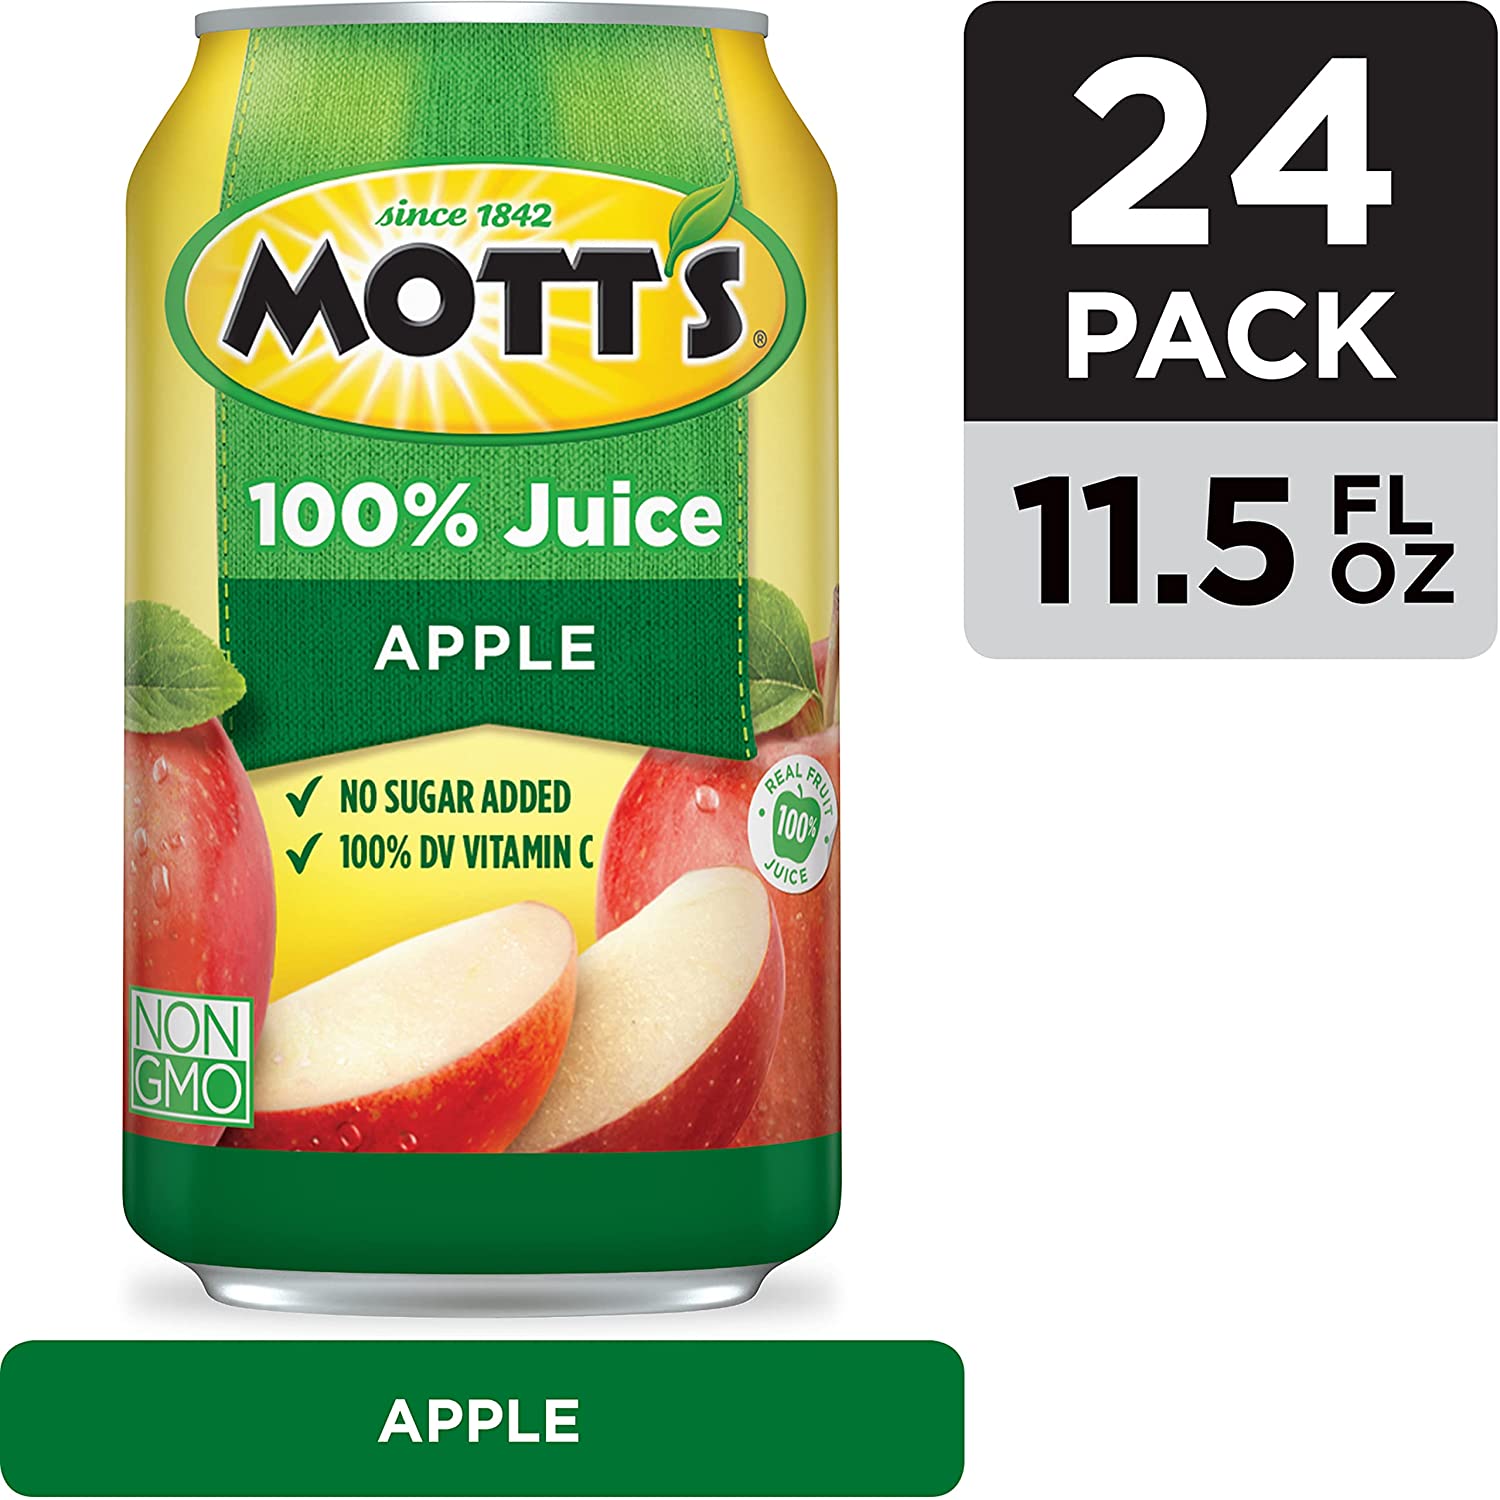 Motts Light Apple Juice, 64 Fluid Ounce Jug -- 8 per Case.